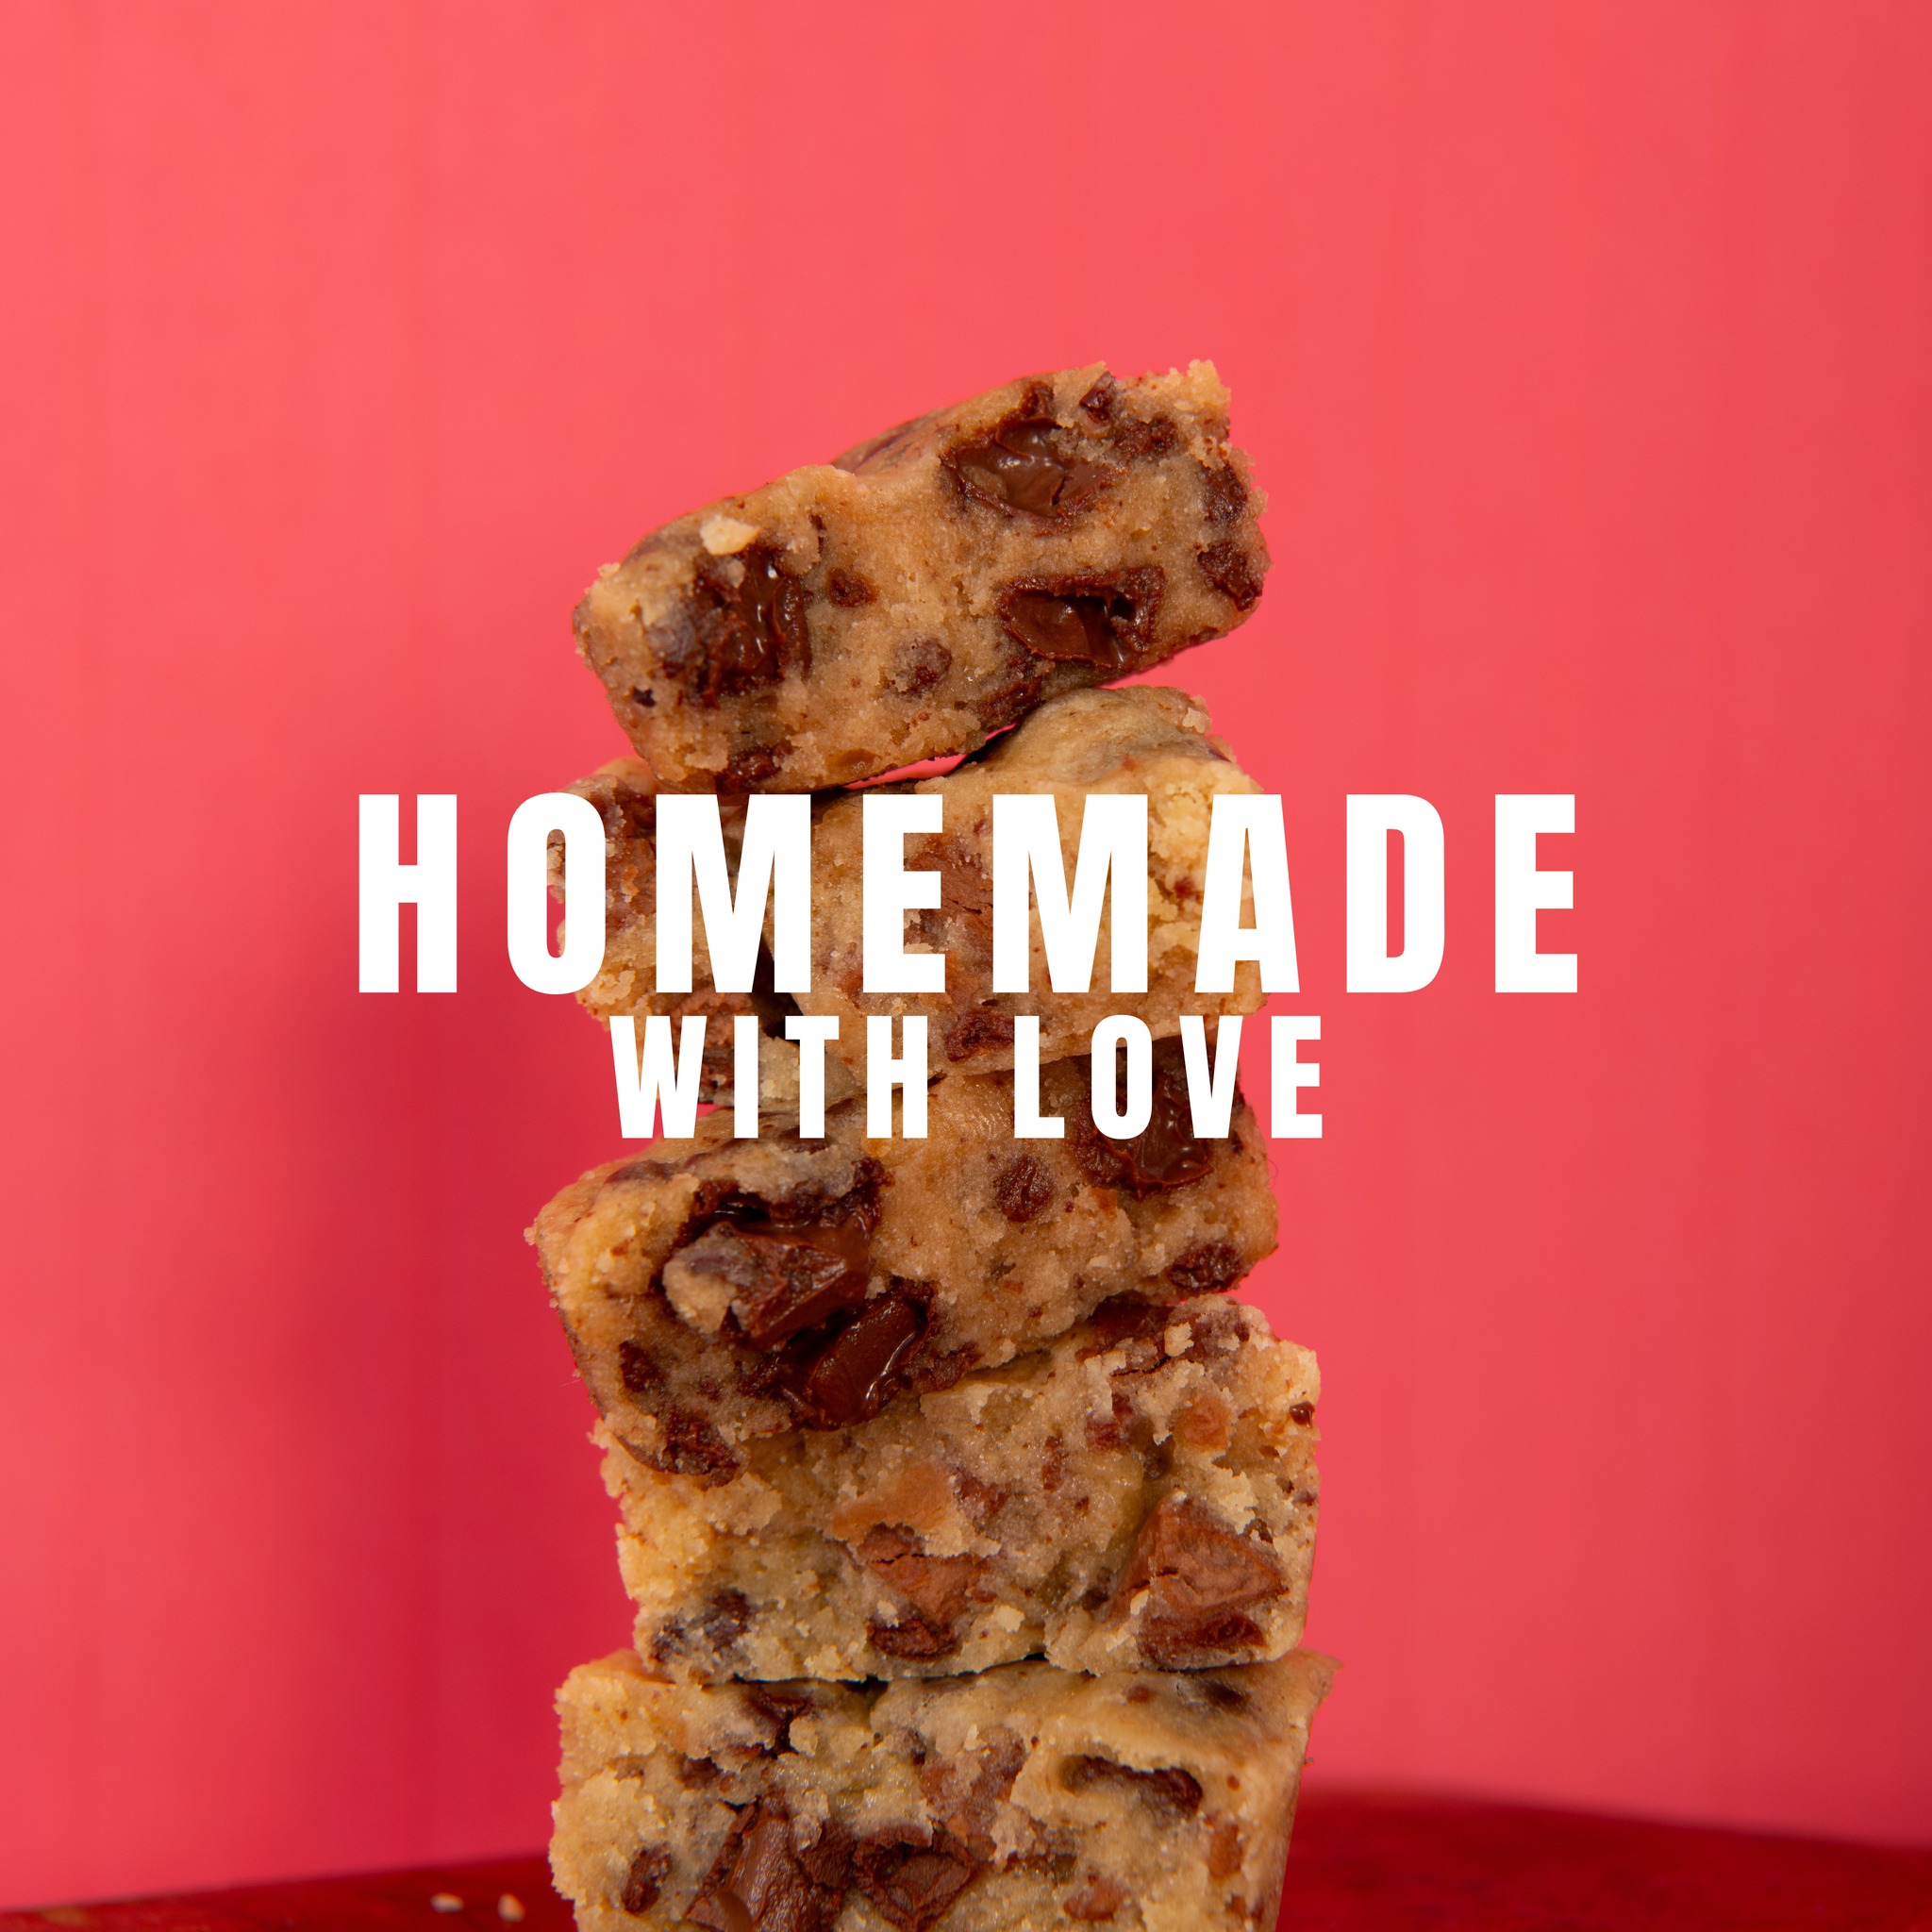 Parce que parfois, un simple cookie peut transformer une journée ordinaire en un moment extraordinaire. 🍪

🍪 Faits maison à Gémenos (13)
📍Disponibles dans plusieurs points de vente
💌 Plus d’infos sur notre site web (lien dans notre bio)

#CookiesGiraudon #CookiesFaitsMaison  #homemadewithlove #CookiesArtisanaux #FaitAvecAmour #Gémenos #RecetteAuthentique #Gourmands  #CuisineArtisanale #marseille #MadeInFrance #CookiesAddict